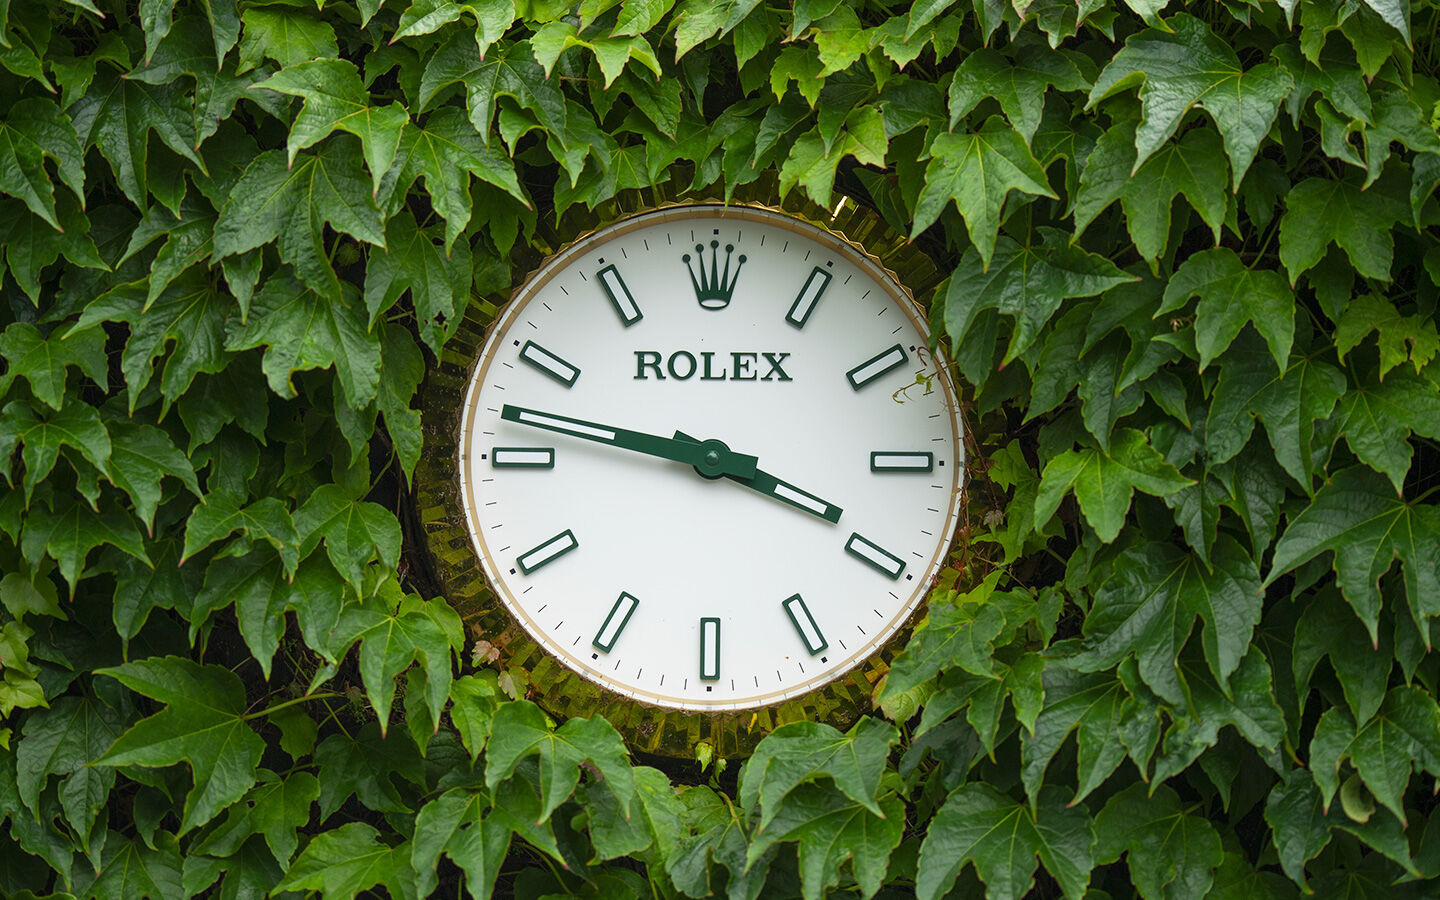 Rolex clock in a hedge